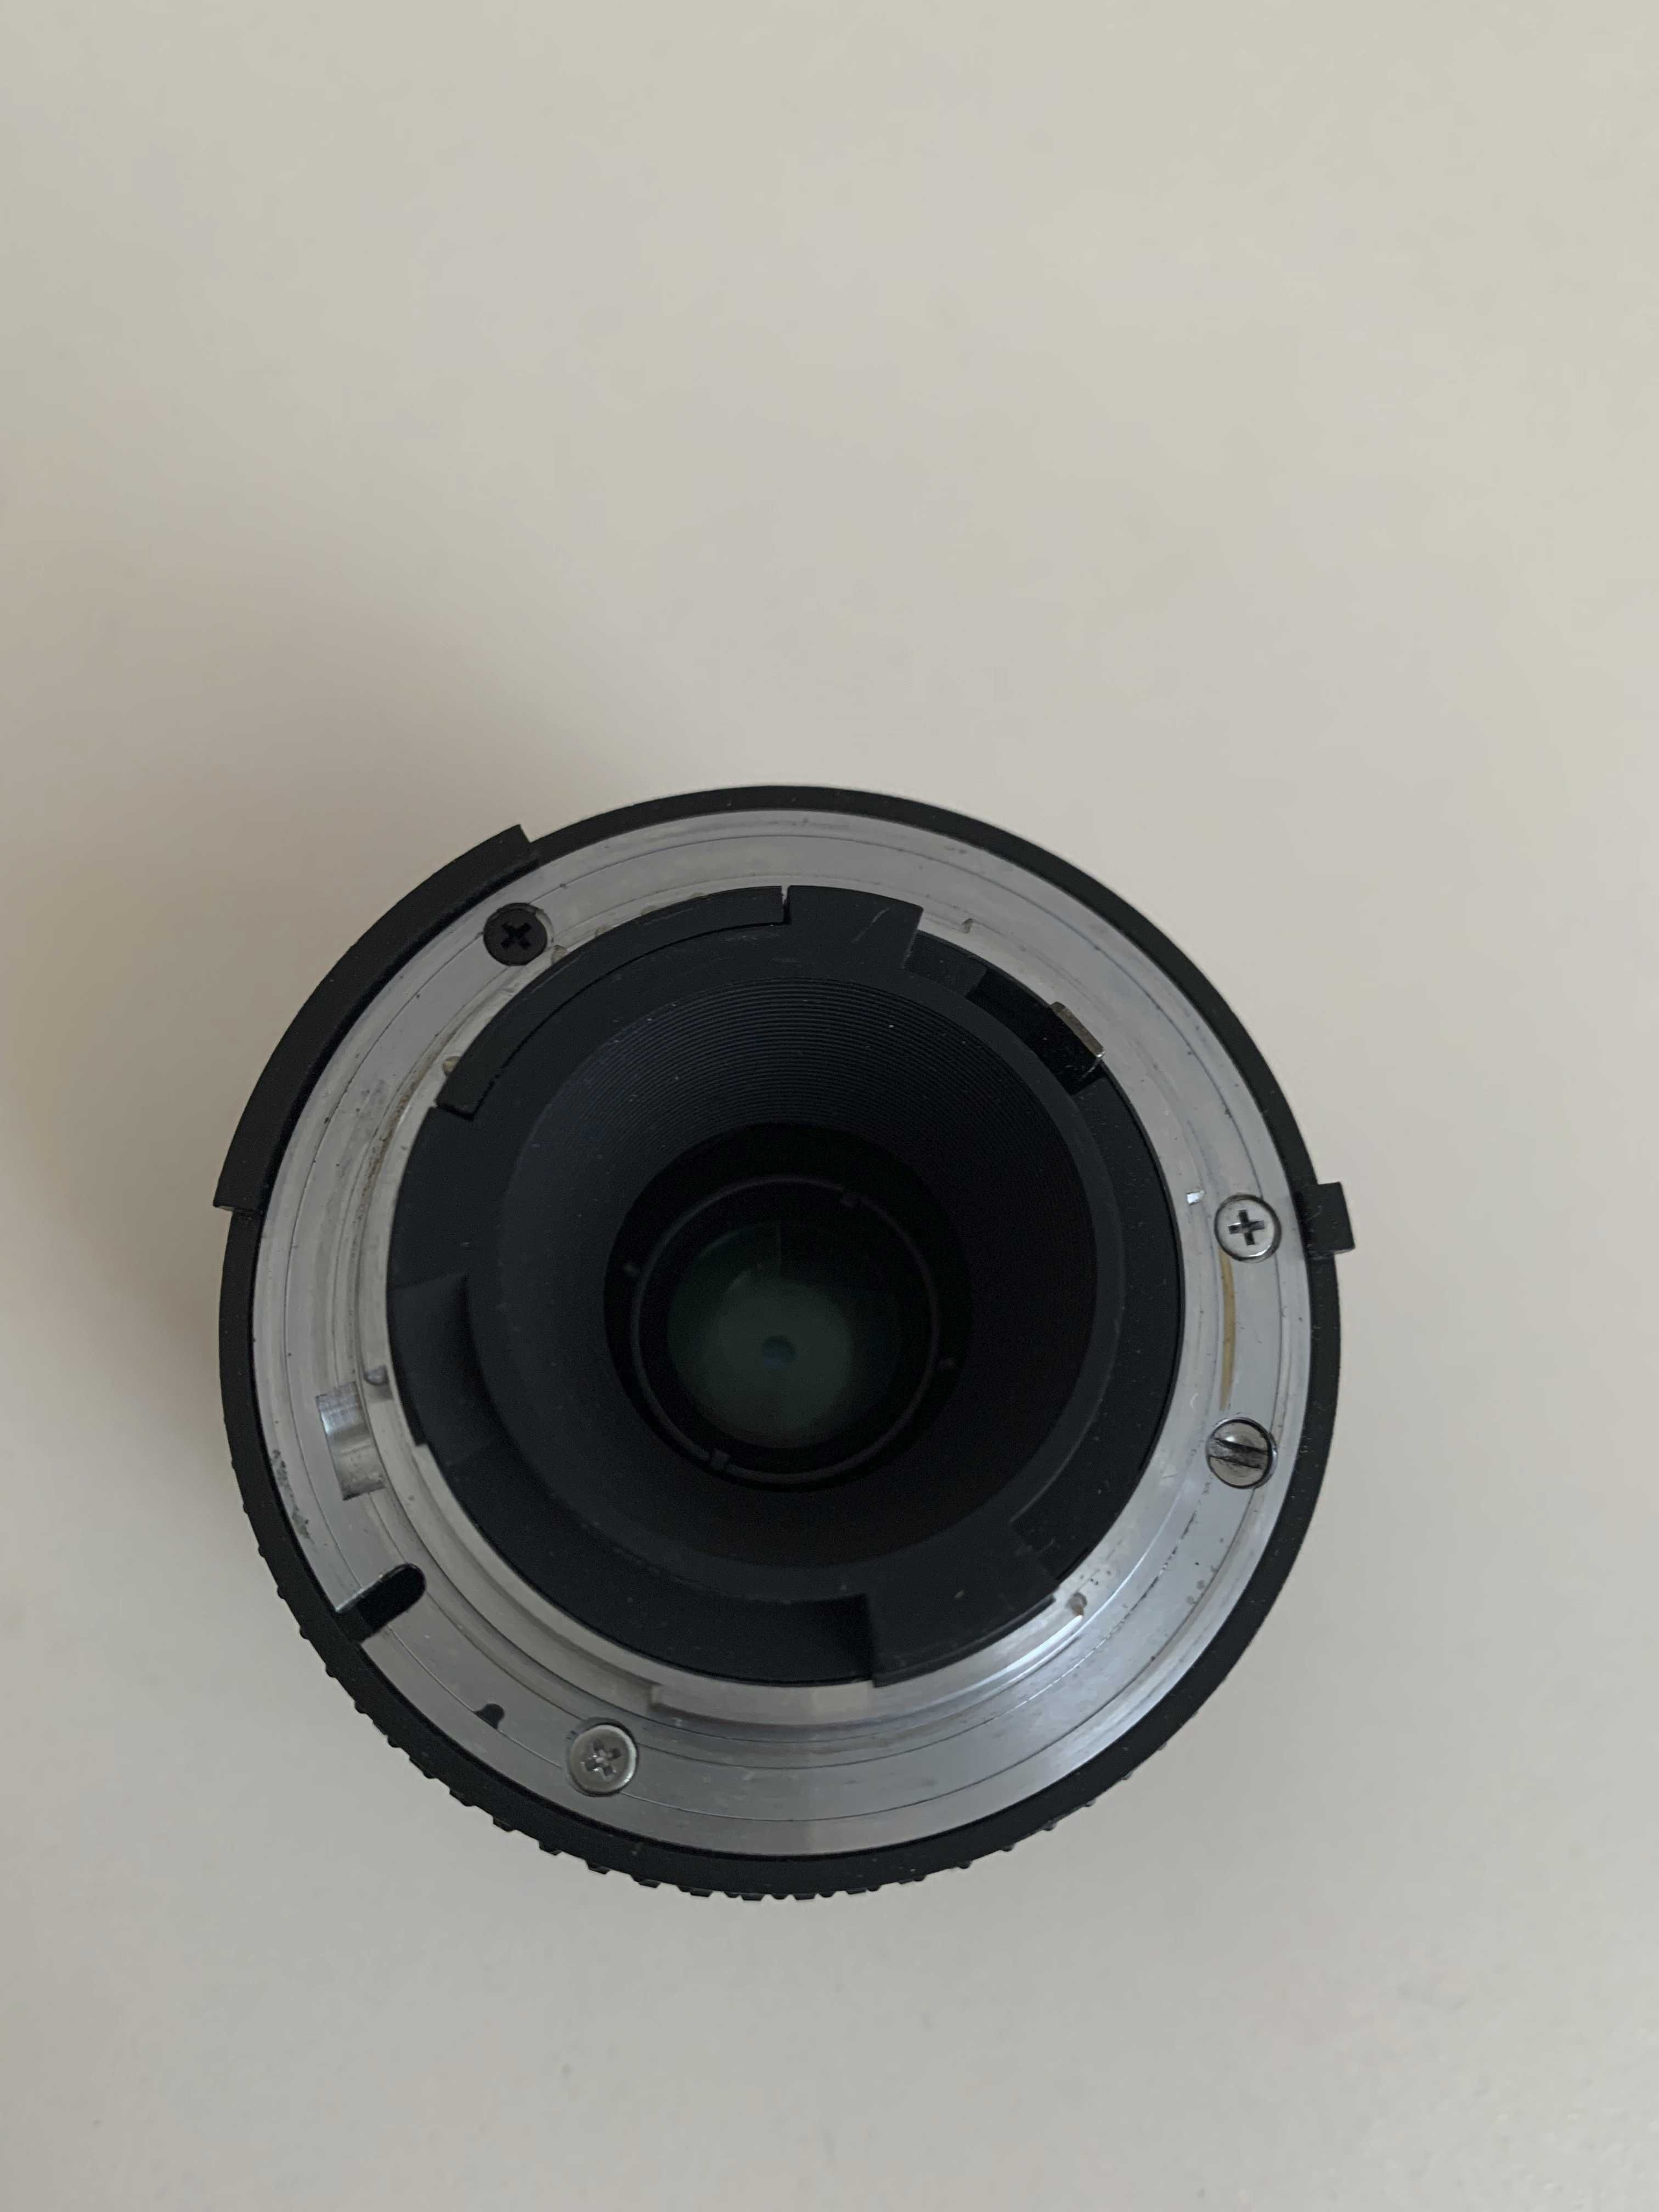 Obiectiv Nikon, AF Zoom - Nikkor, 35 - 70 mm, 1 : 3.3 - 4.5